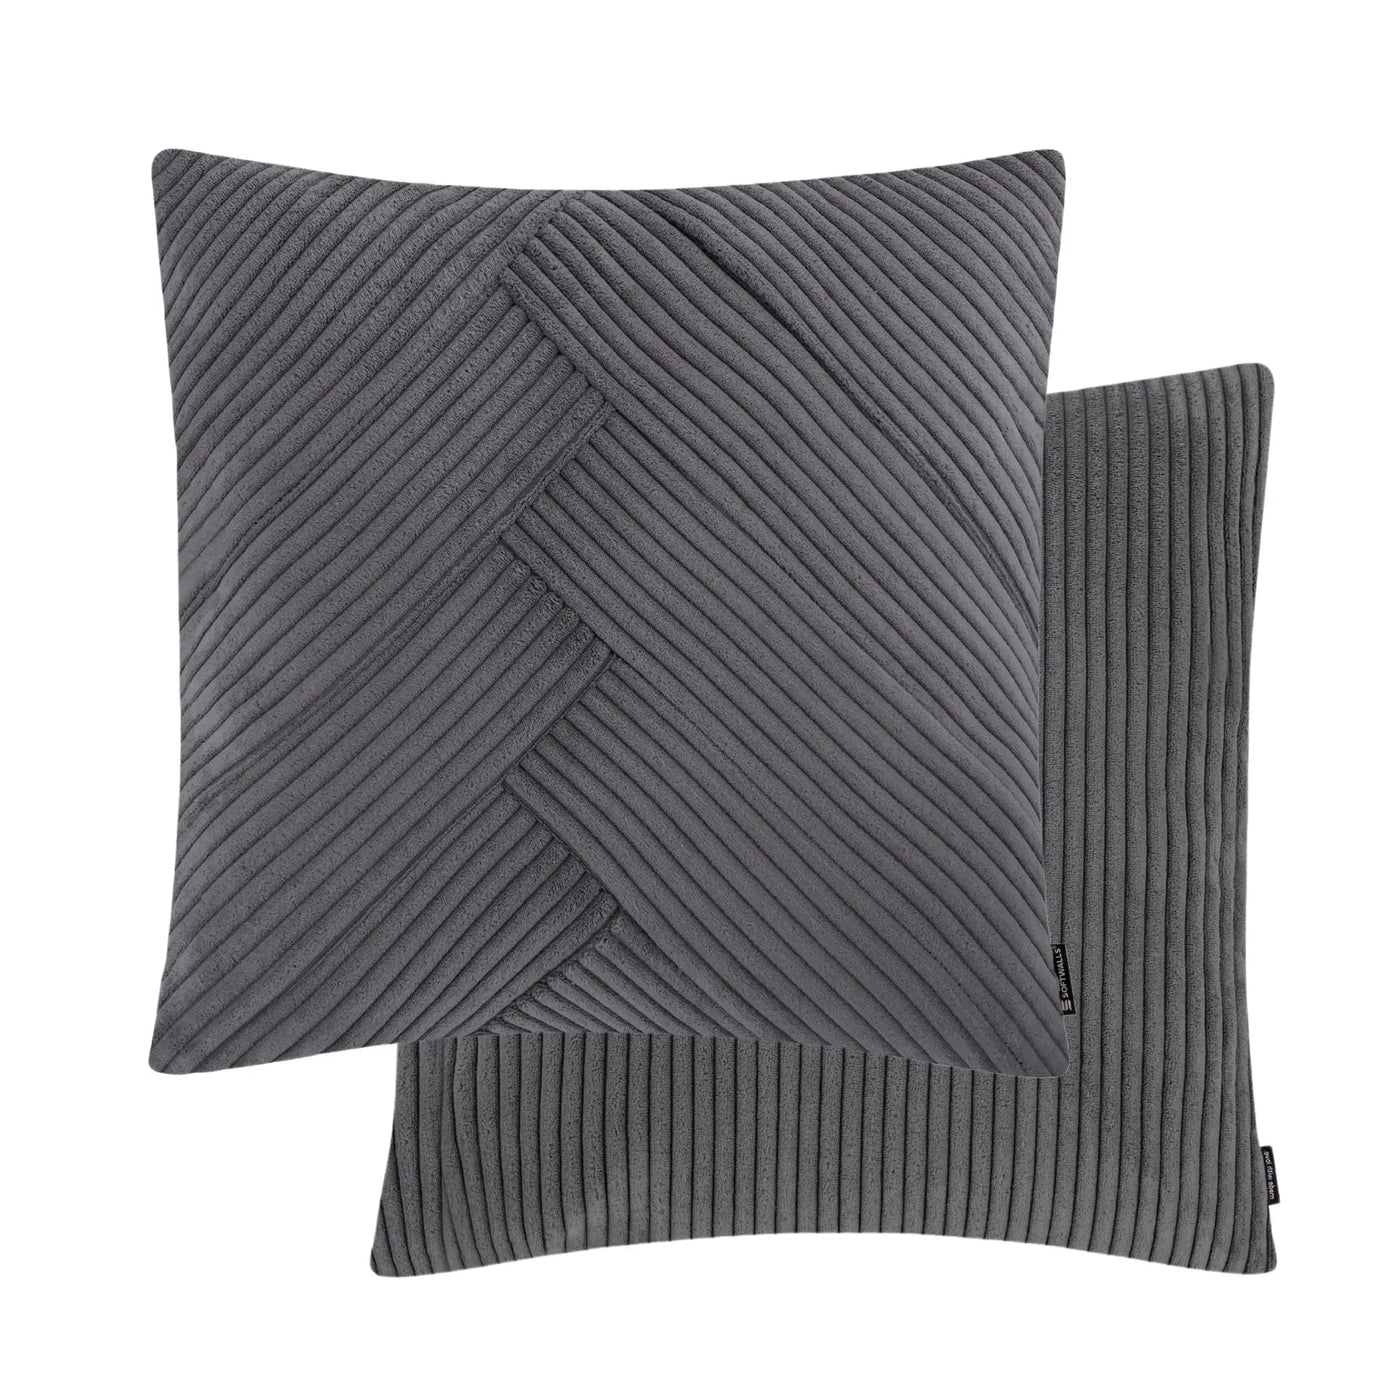 Kissenhülle Wendekissen Cord in der Größe 50 x 50 cm und der Farbe dunkel Grau.